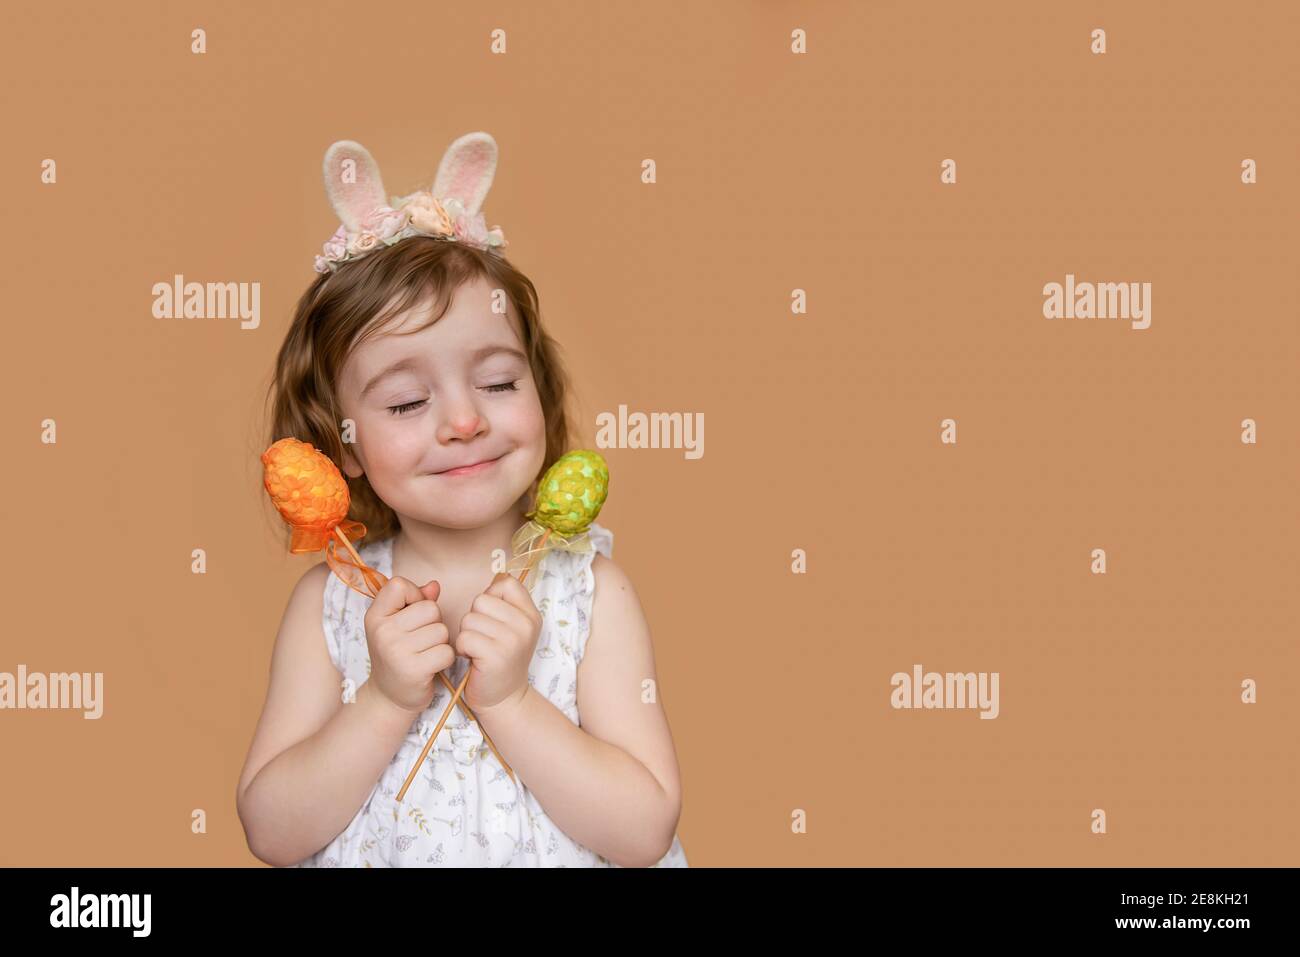 Positives Porträt eines kleinen Mädchens mit Kaninchenohren auf dem Kopf, Träume von Schokolade, in ihren Händen ein orange grünes Ei. Isolierter hellorangefarbener Hintergrund Stockfoto